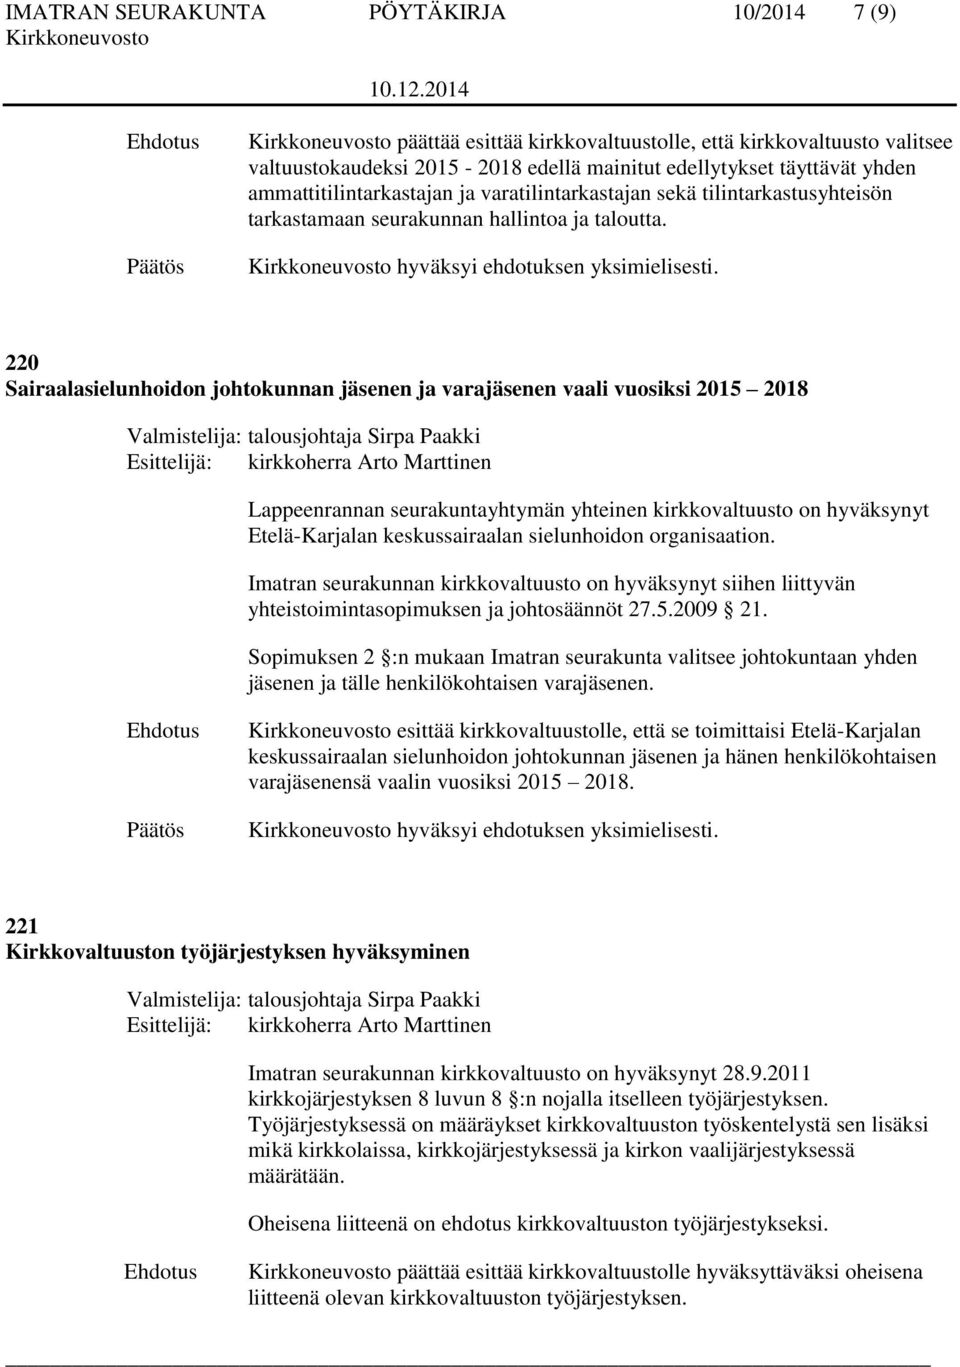 220 Sairaalasielunhoidon johtokunnan jäsenen ja varajäsenen vaali vuosiksi 2015 2018 Lappeenrannan seurakuntayhtymän yhteinen kirkkovaltuusto on hyväksynyt Etelä-Karjalan keskussairaalan sielunhoidon